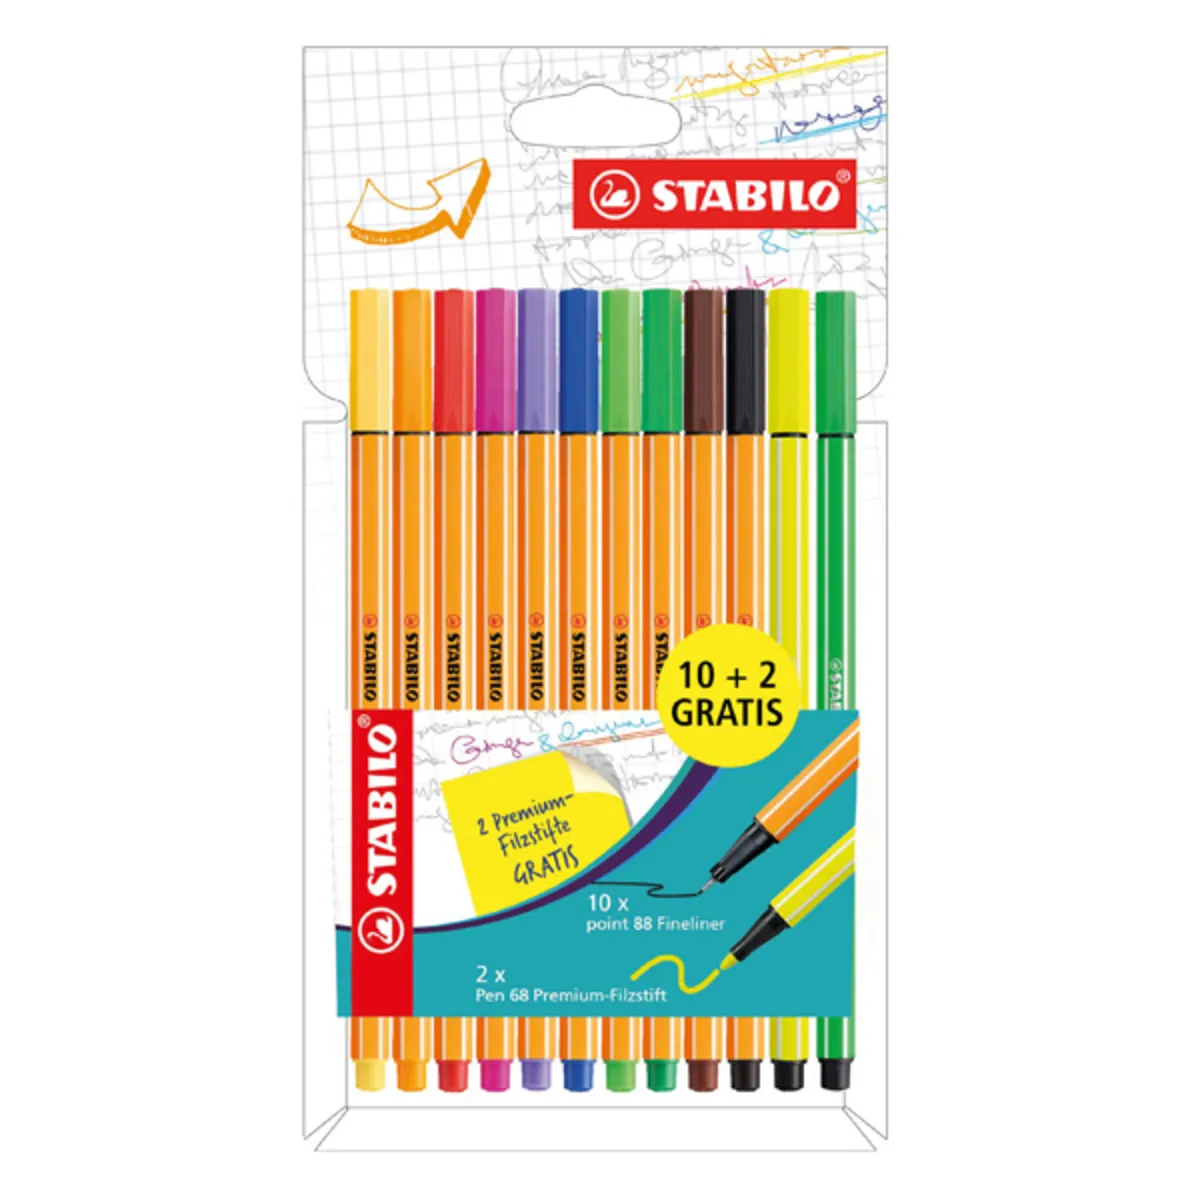 STABILO Fineliner point 88 10er 2 Pen 68 neon gratis